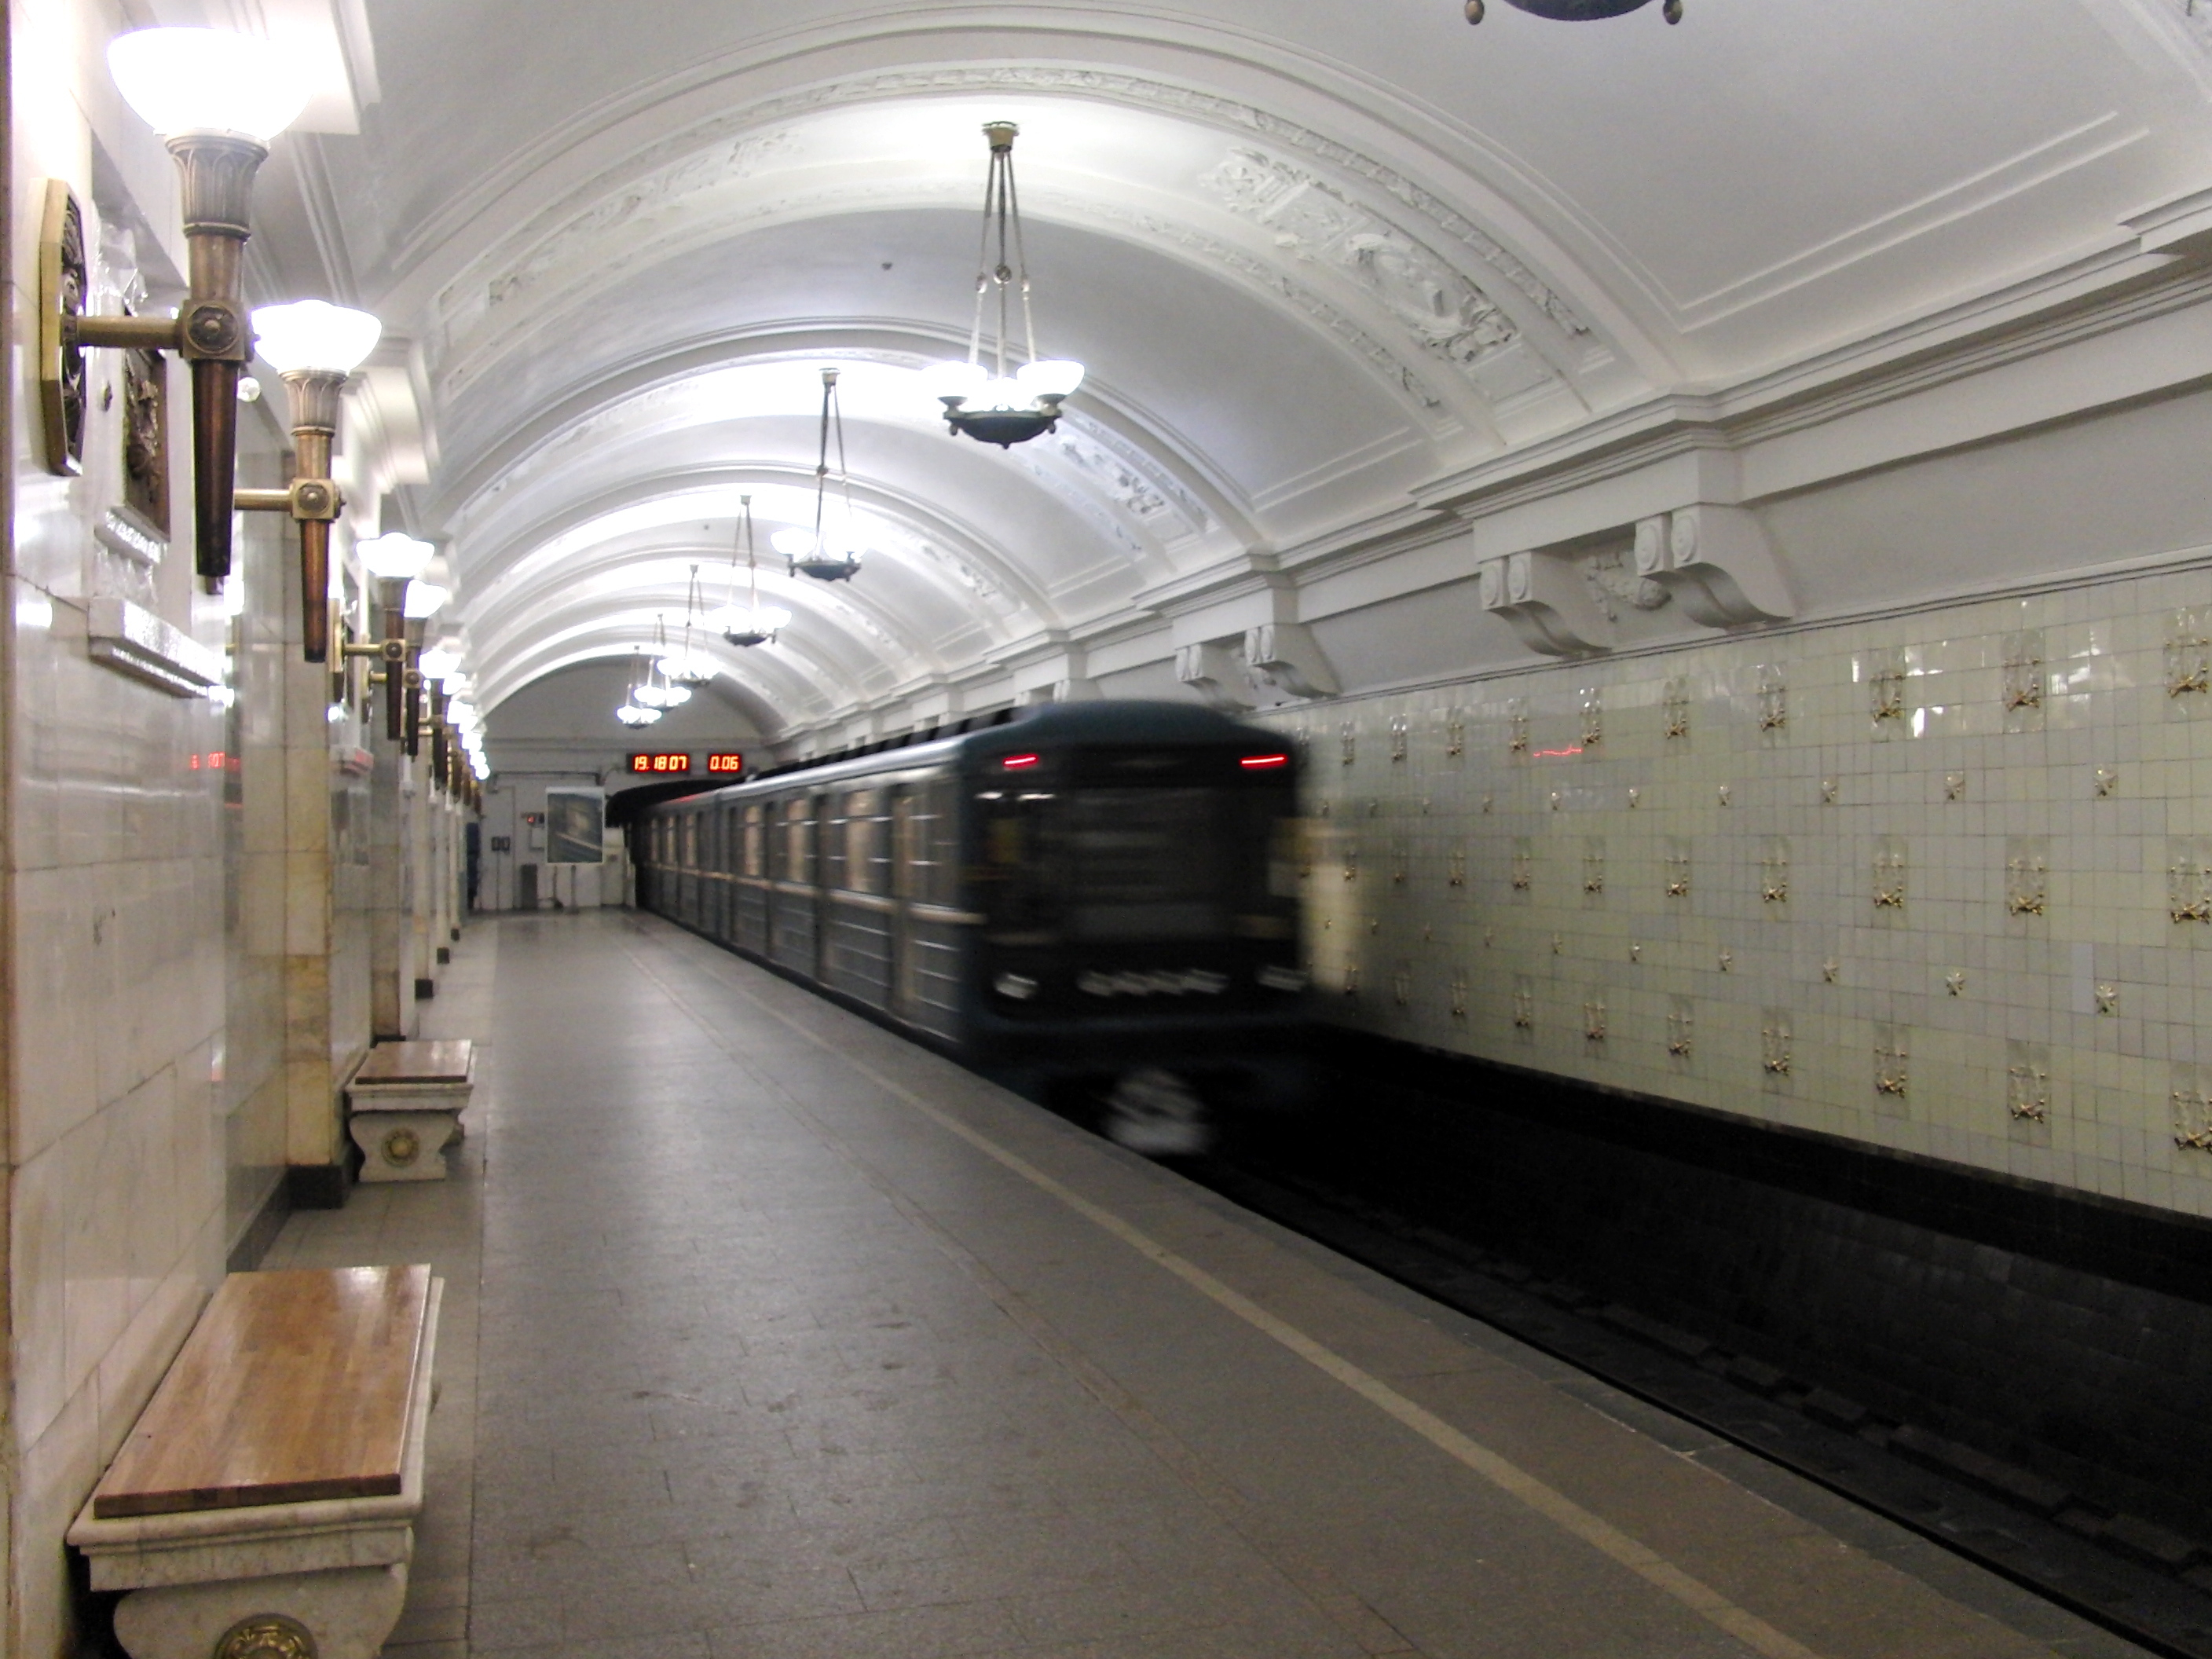 Октябрьская 5 метро